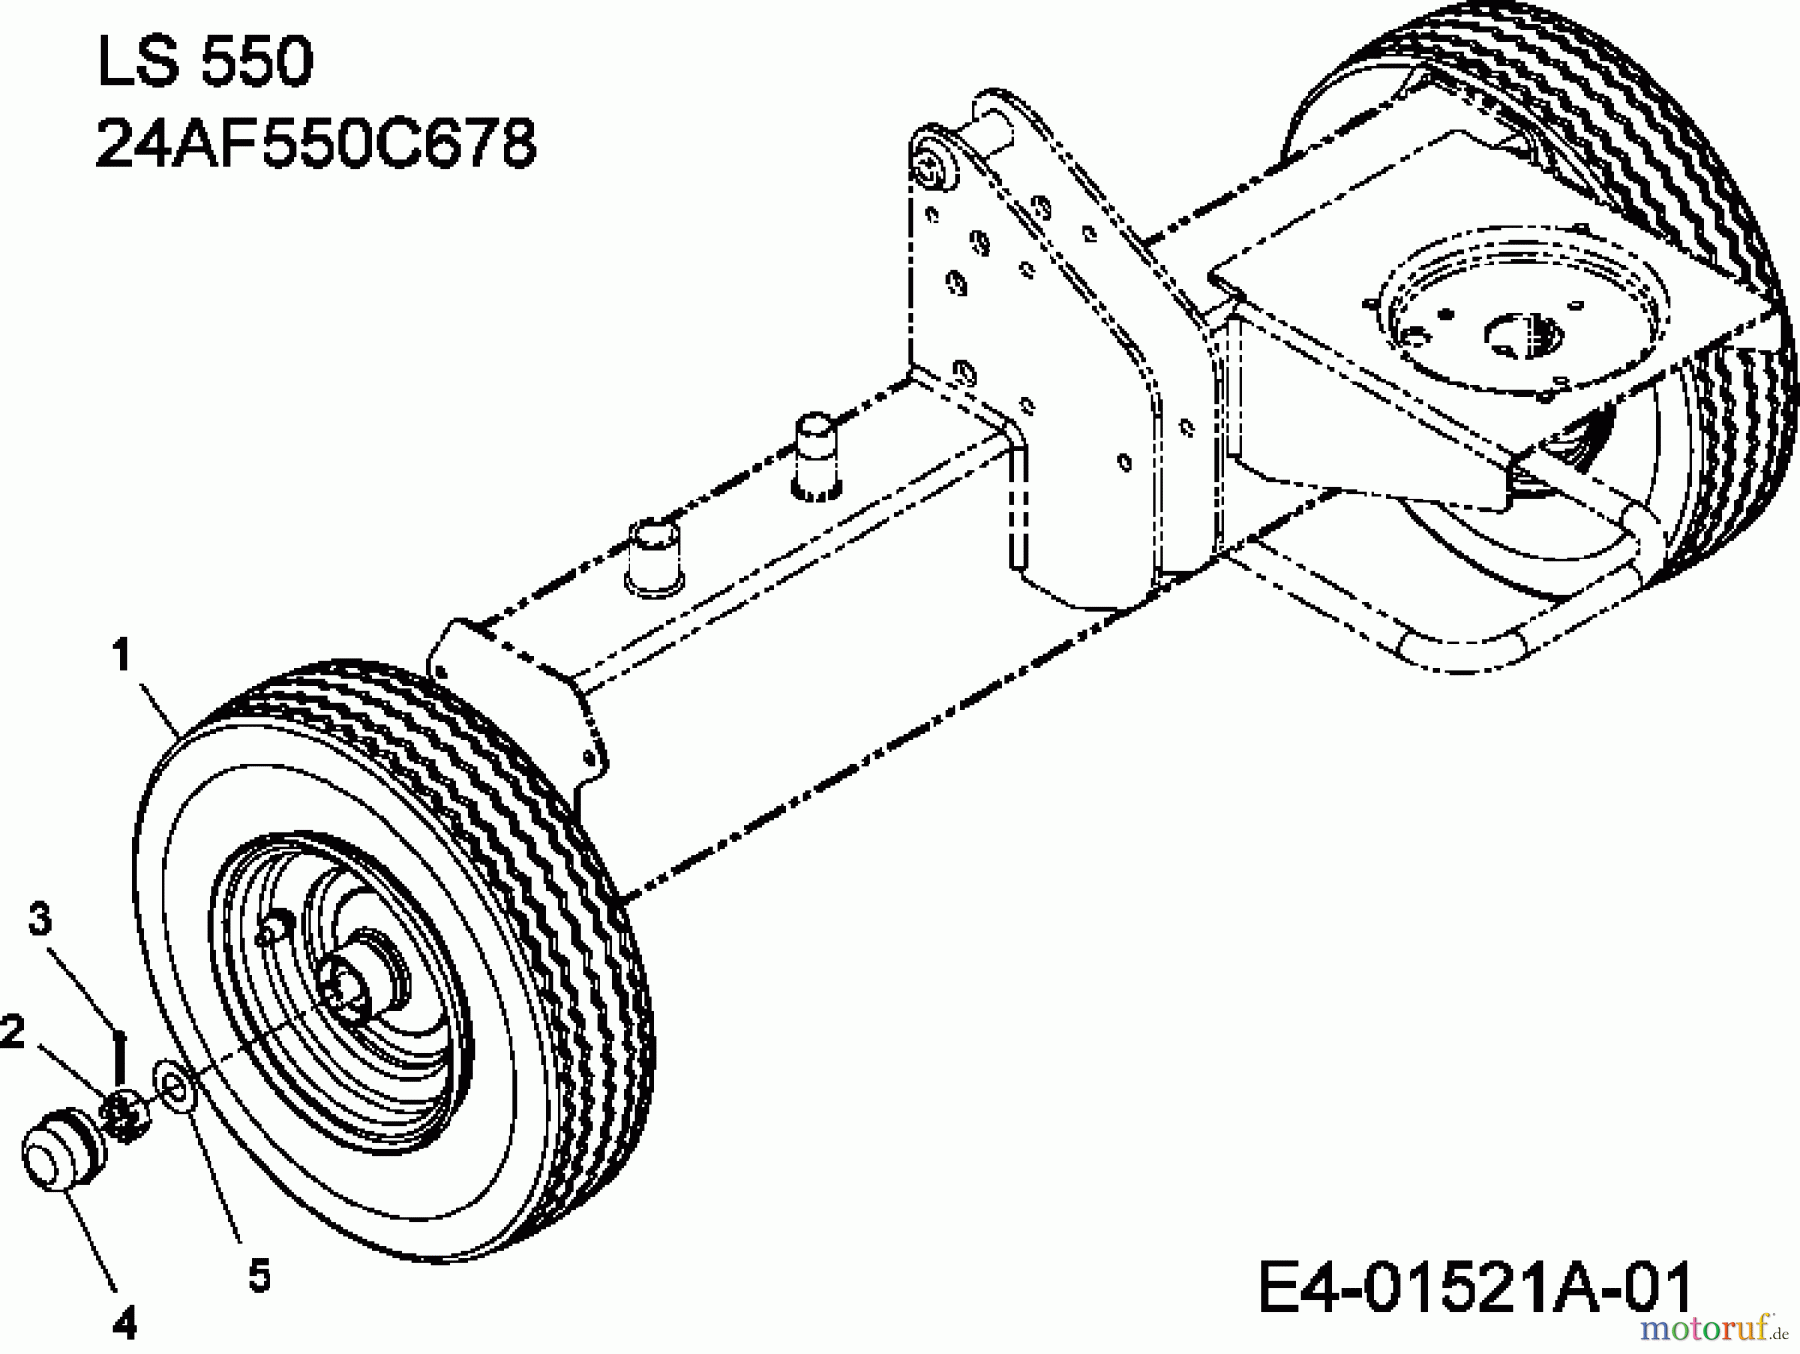  MTD Log splitter LS 550 24AF550C678  (2010) Wheels